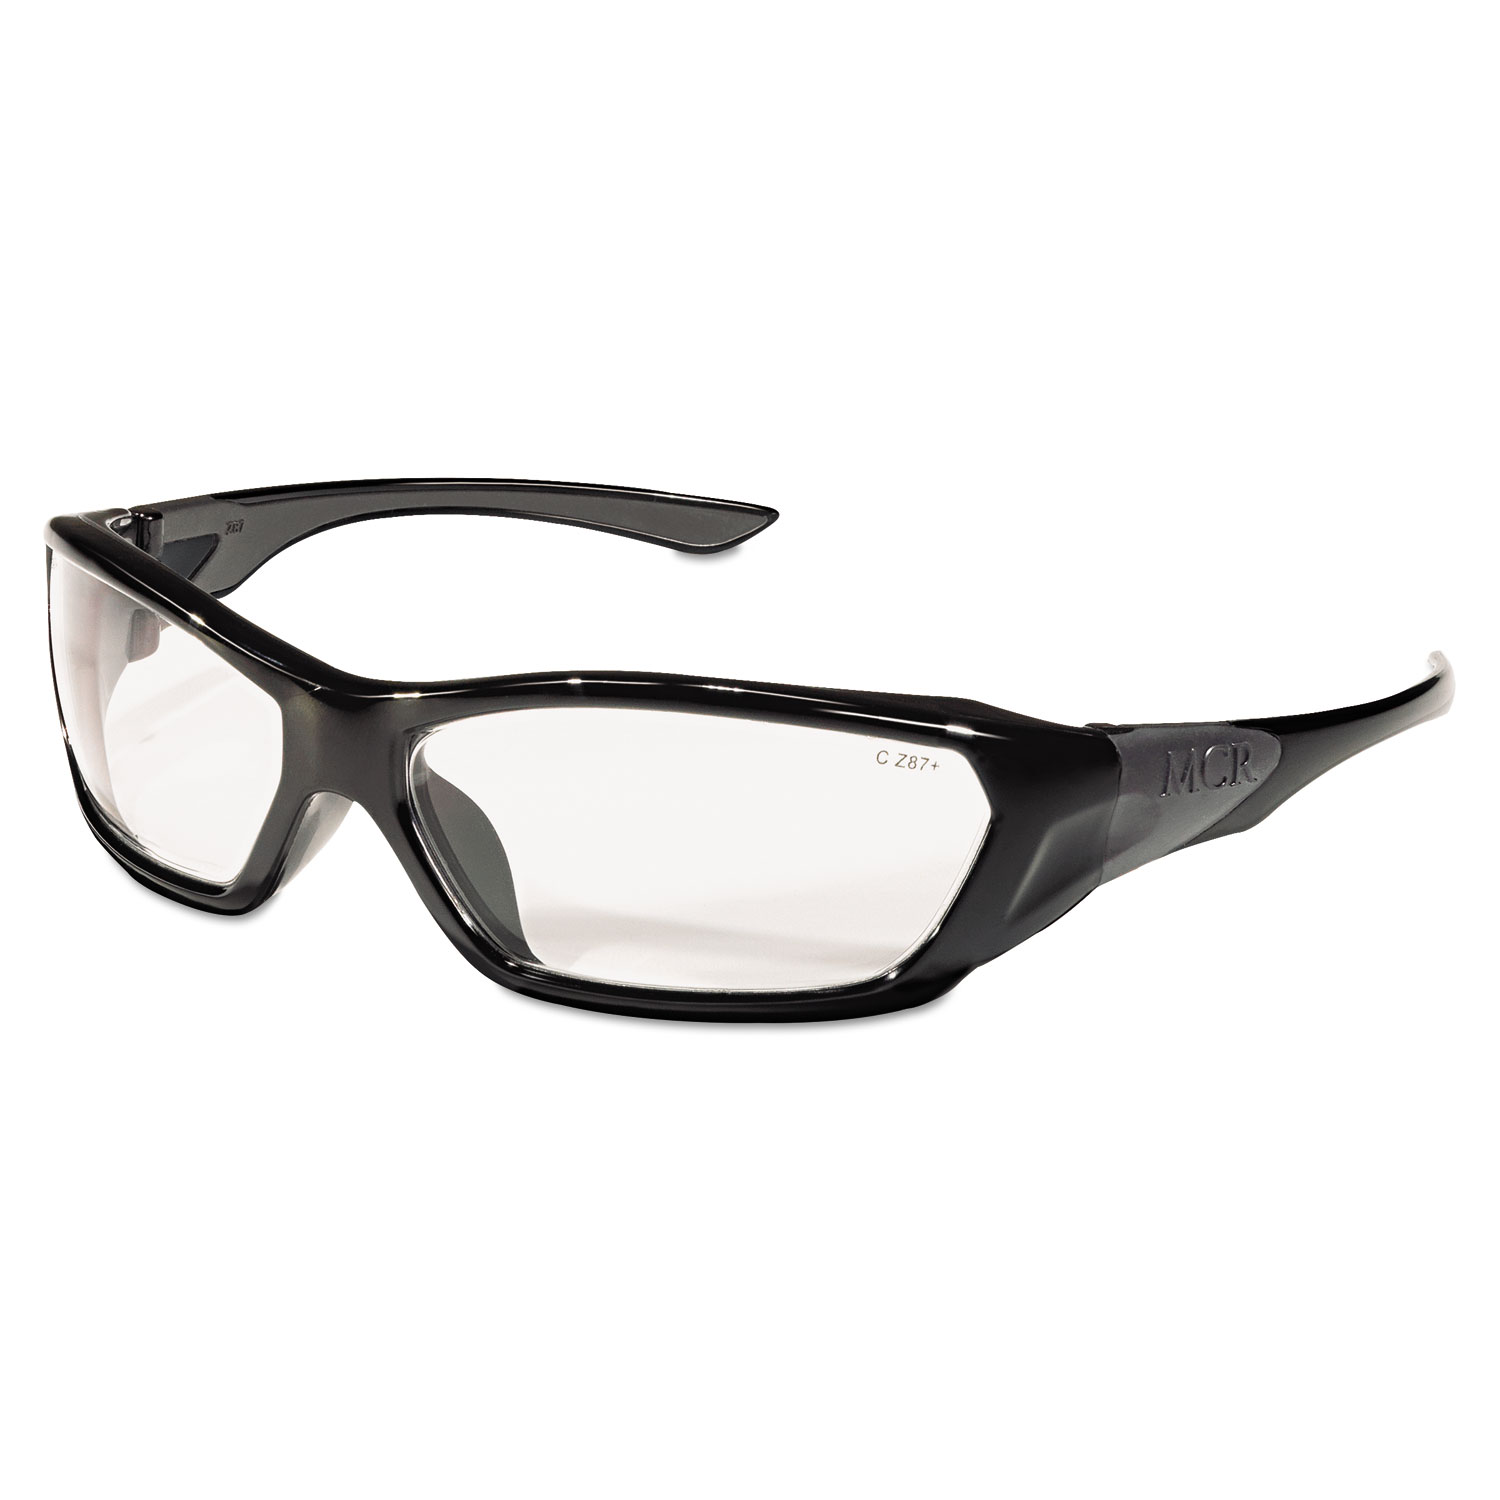  MCR Safety FF120 ForceFlex Safety Glasses, Black Frame, Clear Lens (CRWFF120) 